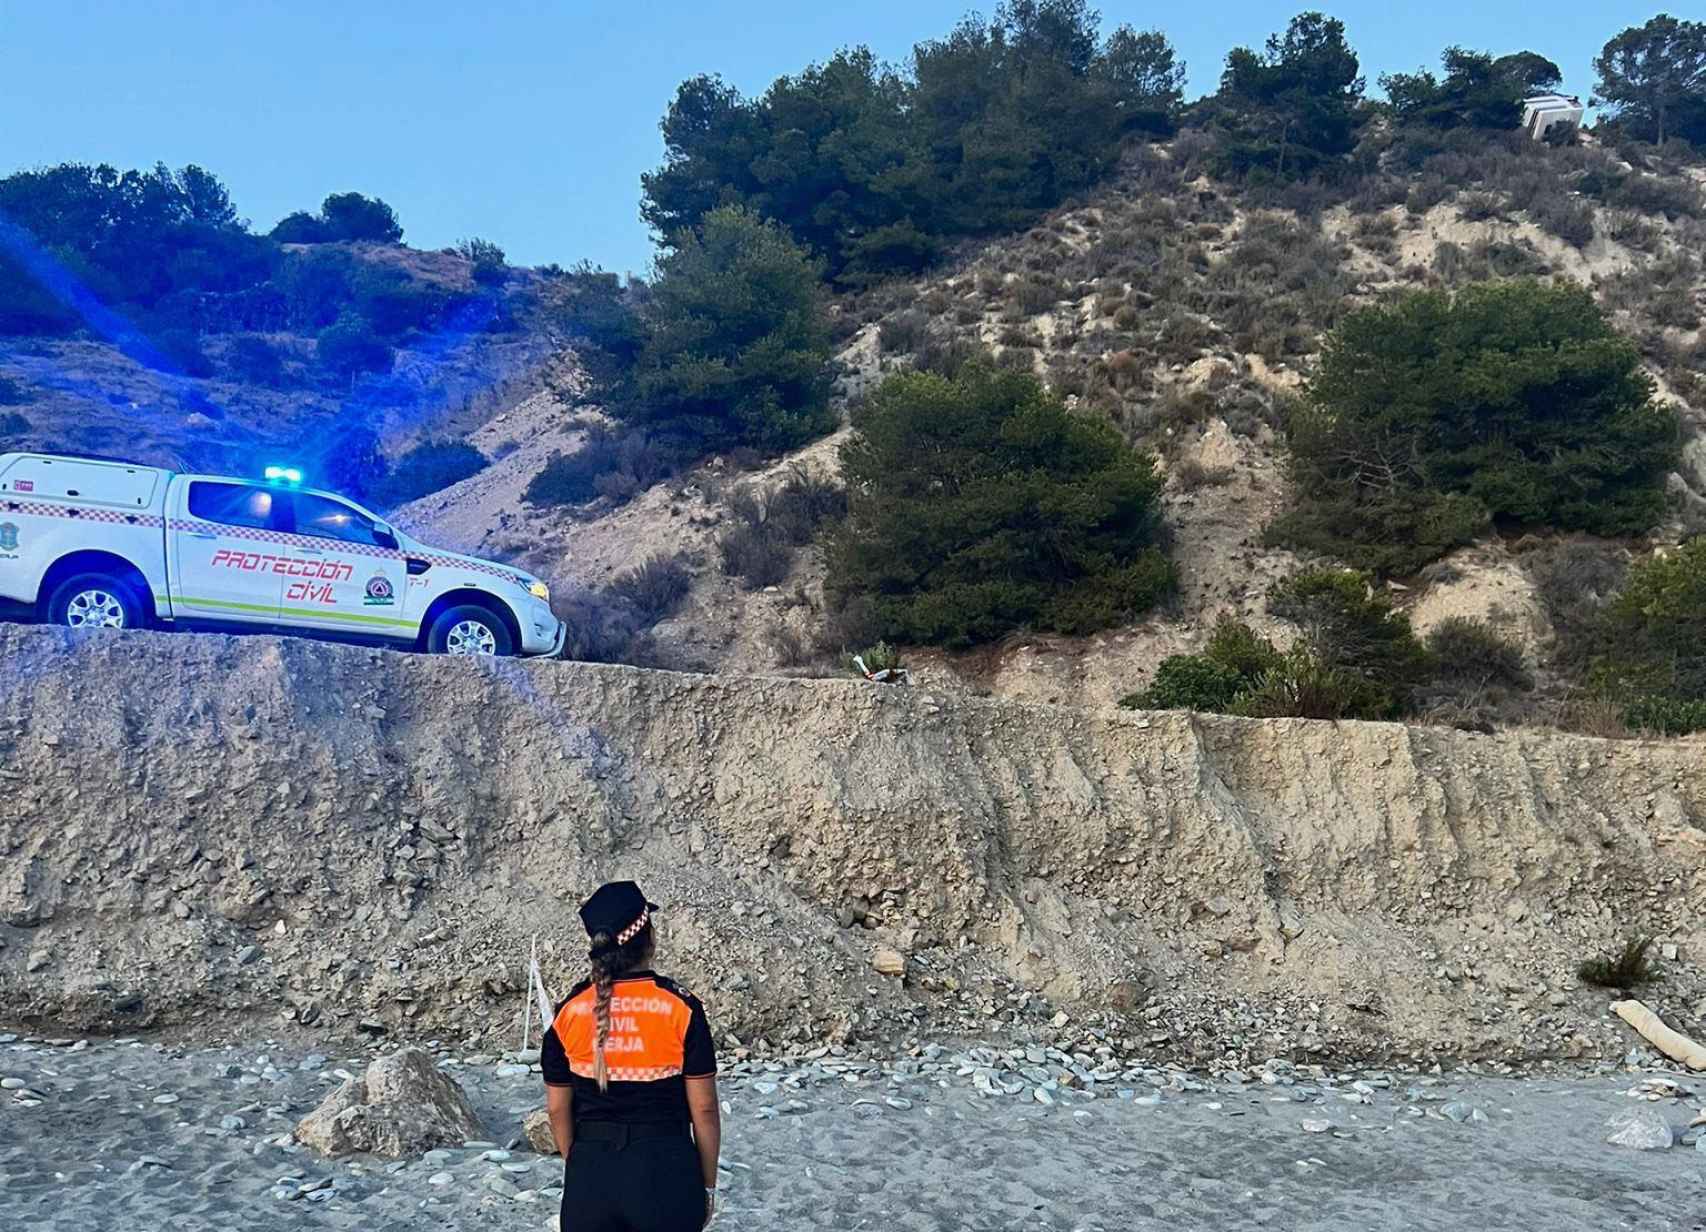 Una agente de Protección Civil en la playa acordonada mira hacia la furgoneta.